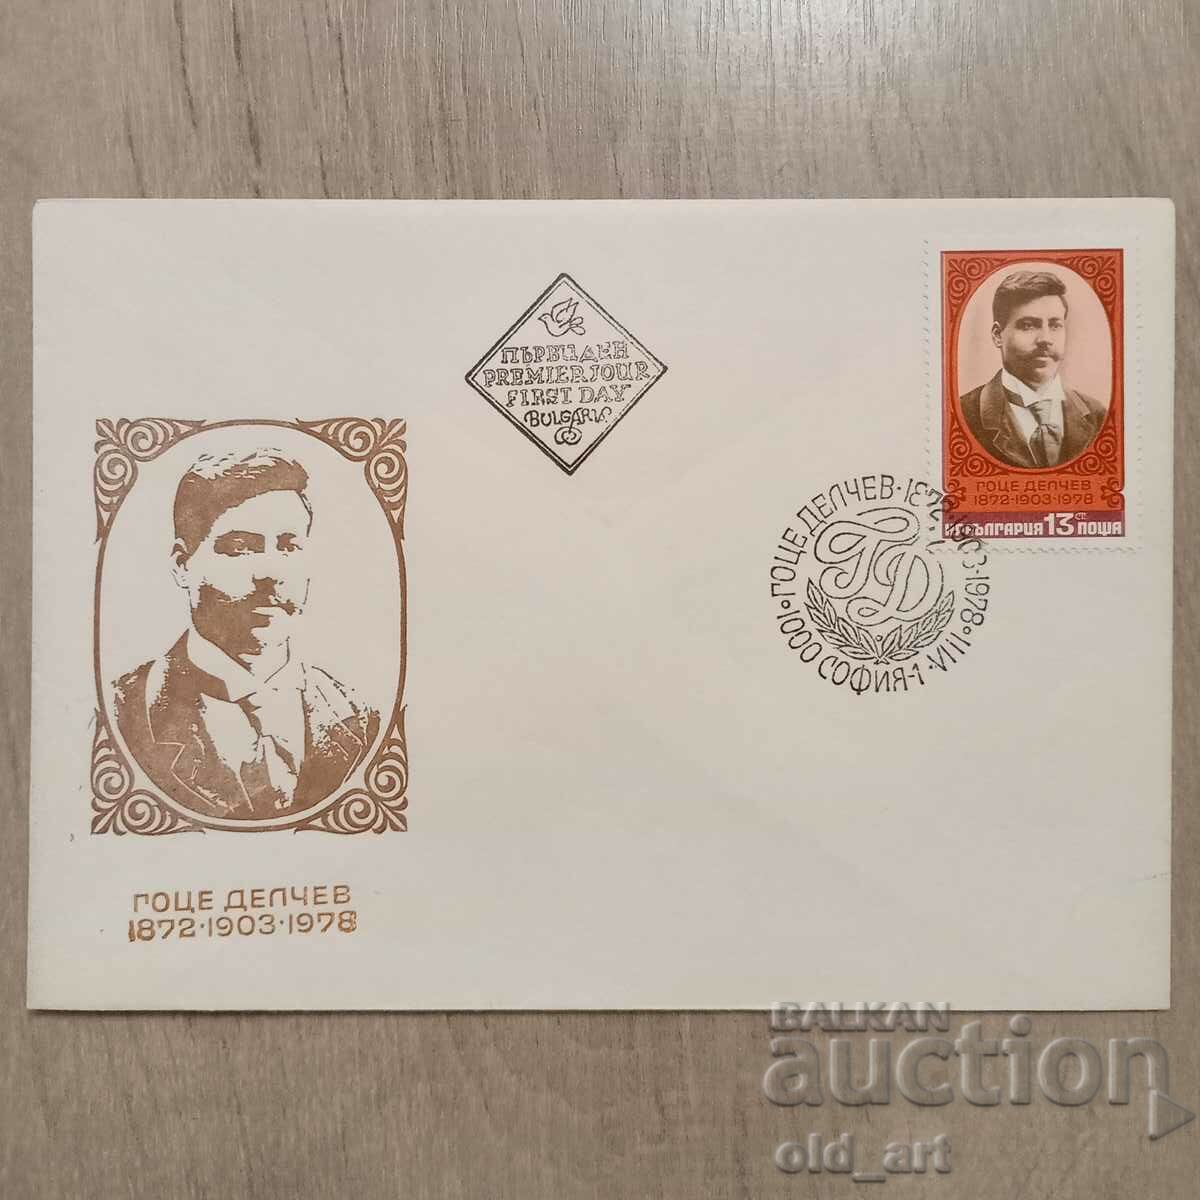 Postal envelope - Gotse Delchev